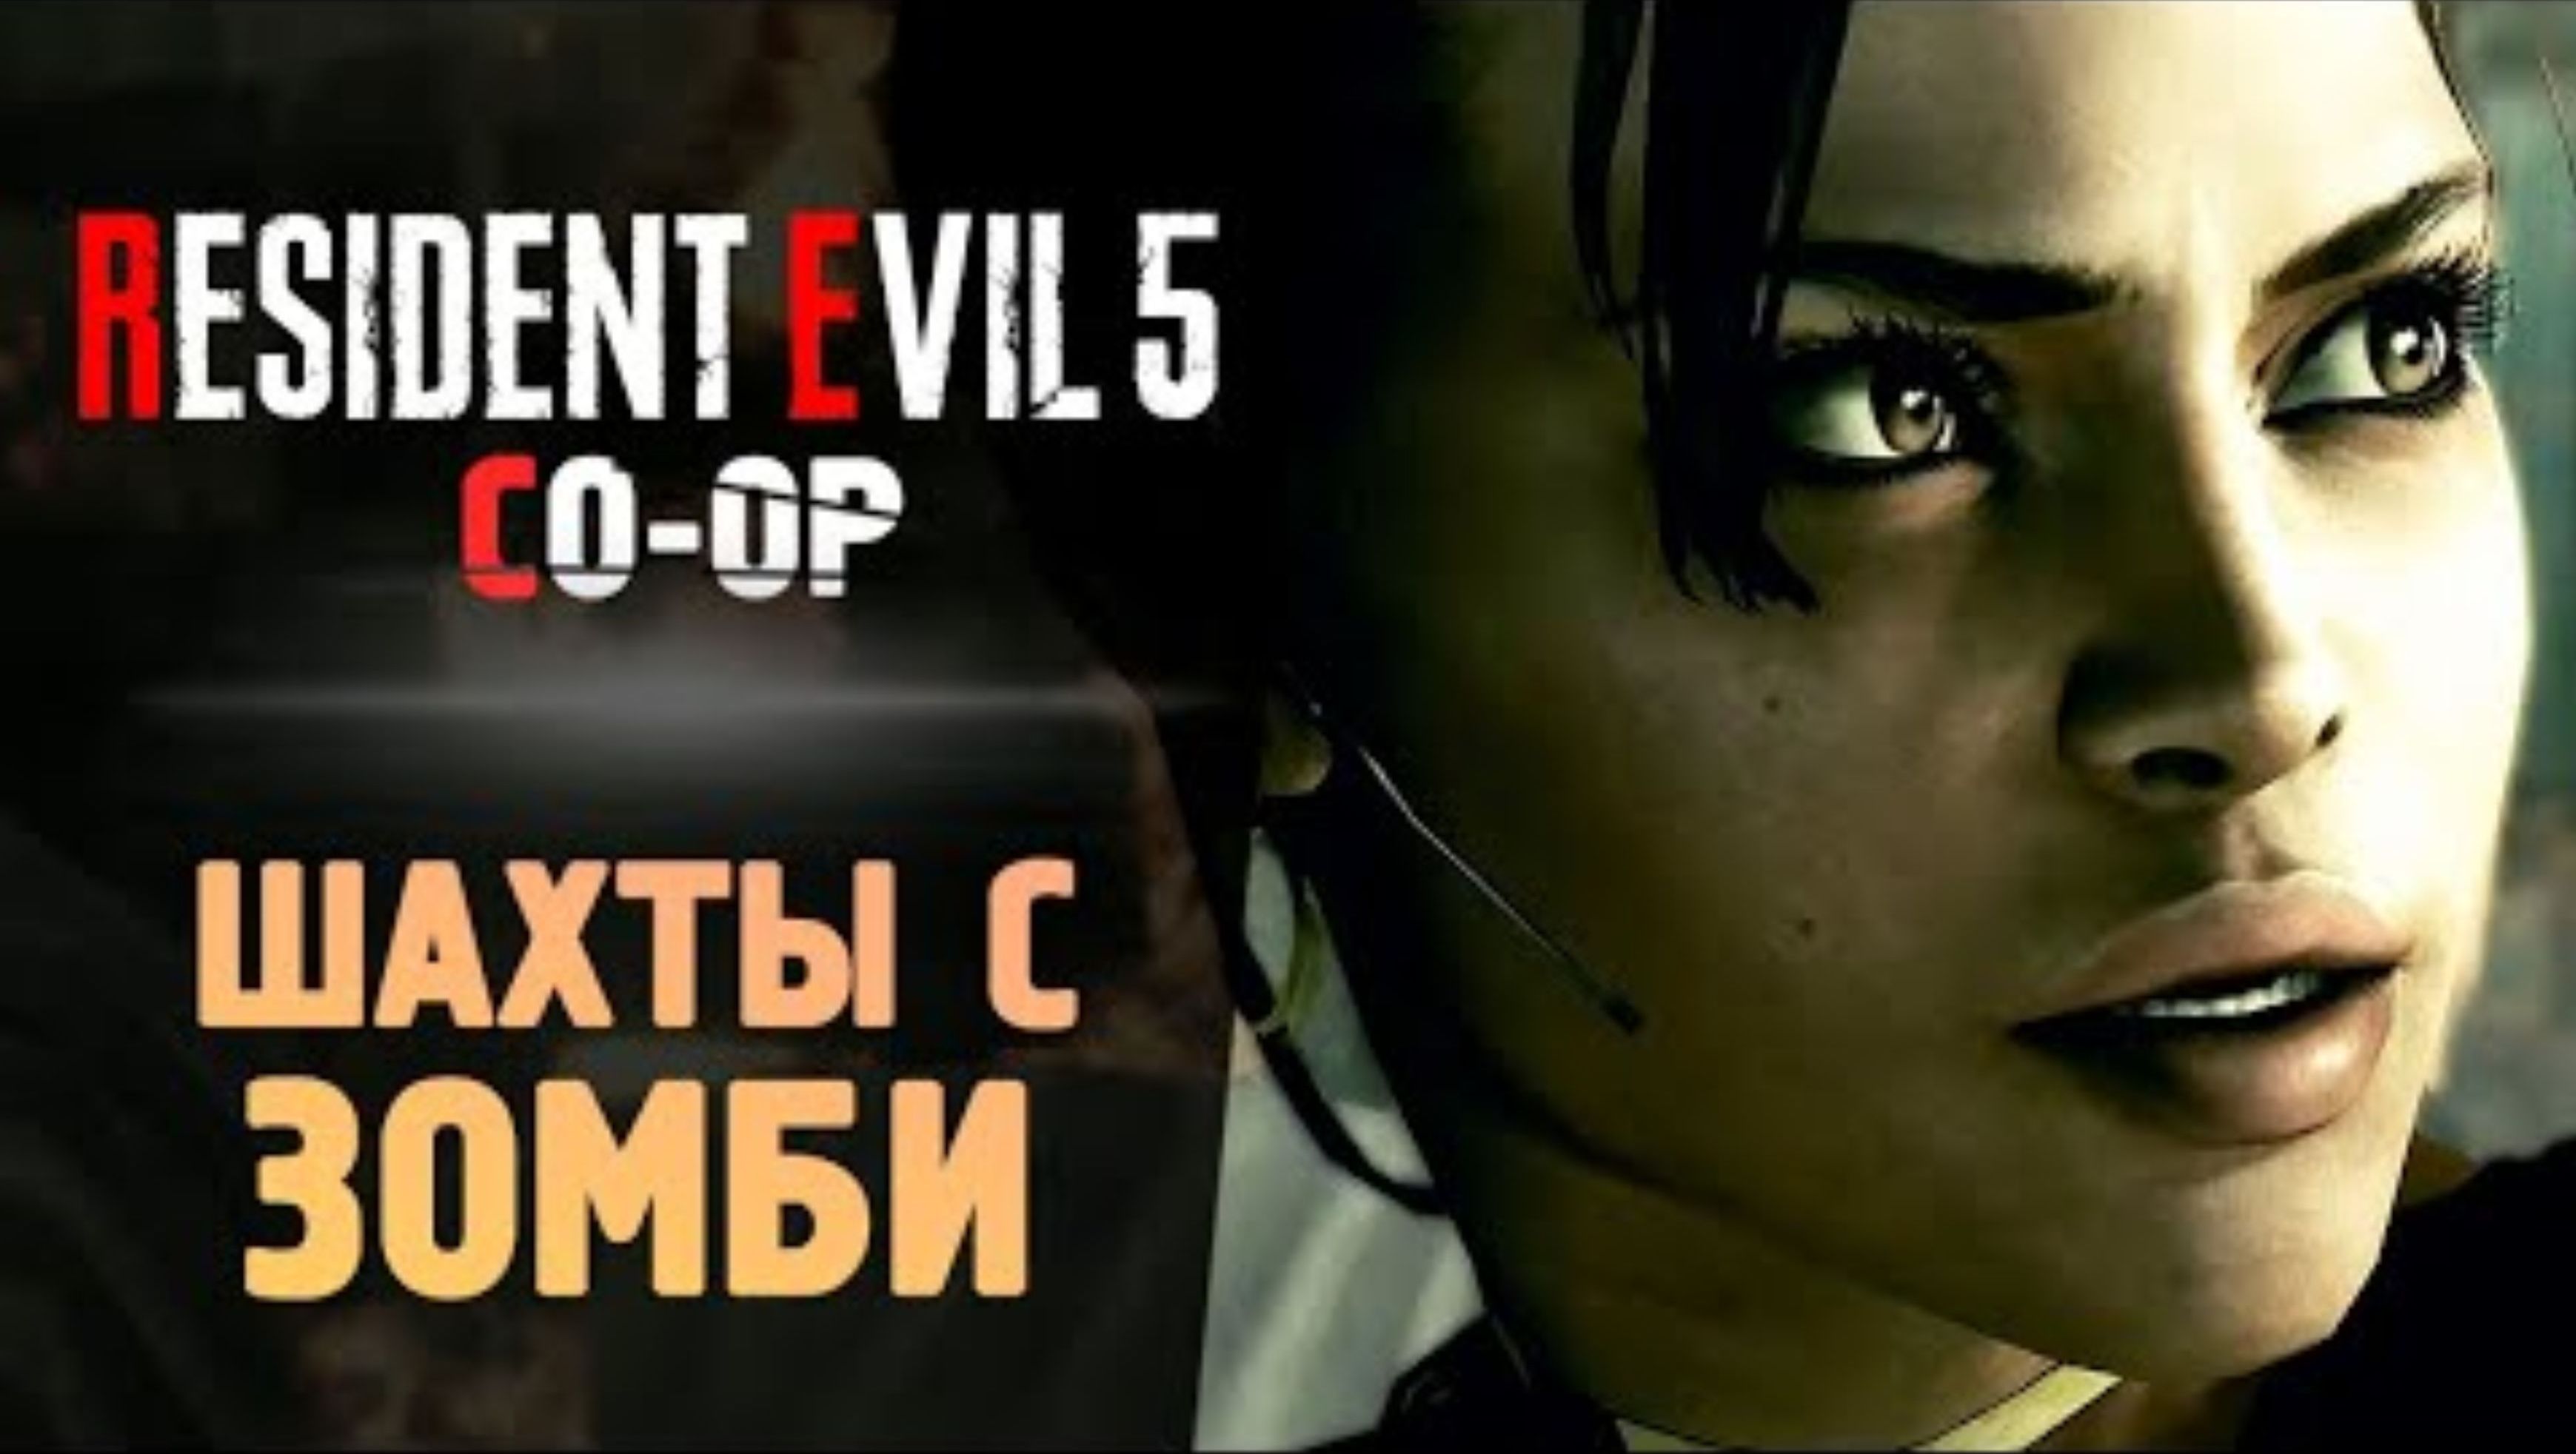 ШАХТЫ С ЗОМБЯТИНОЙ - Прохождение - Resident Evil 5 #2